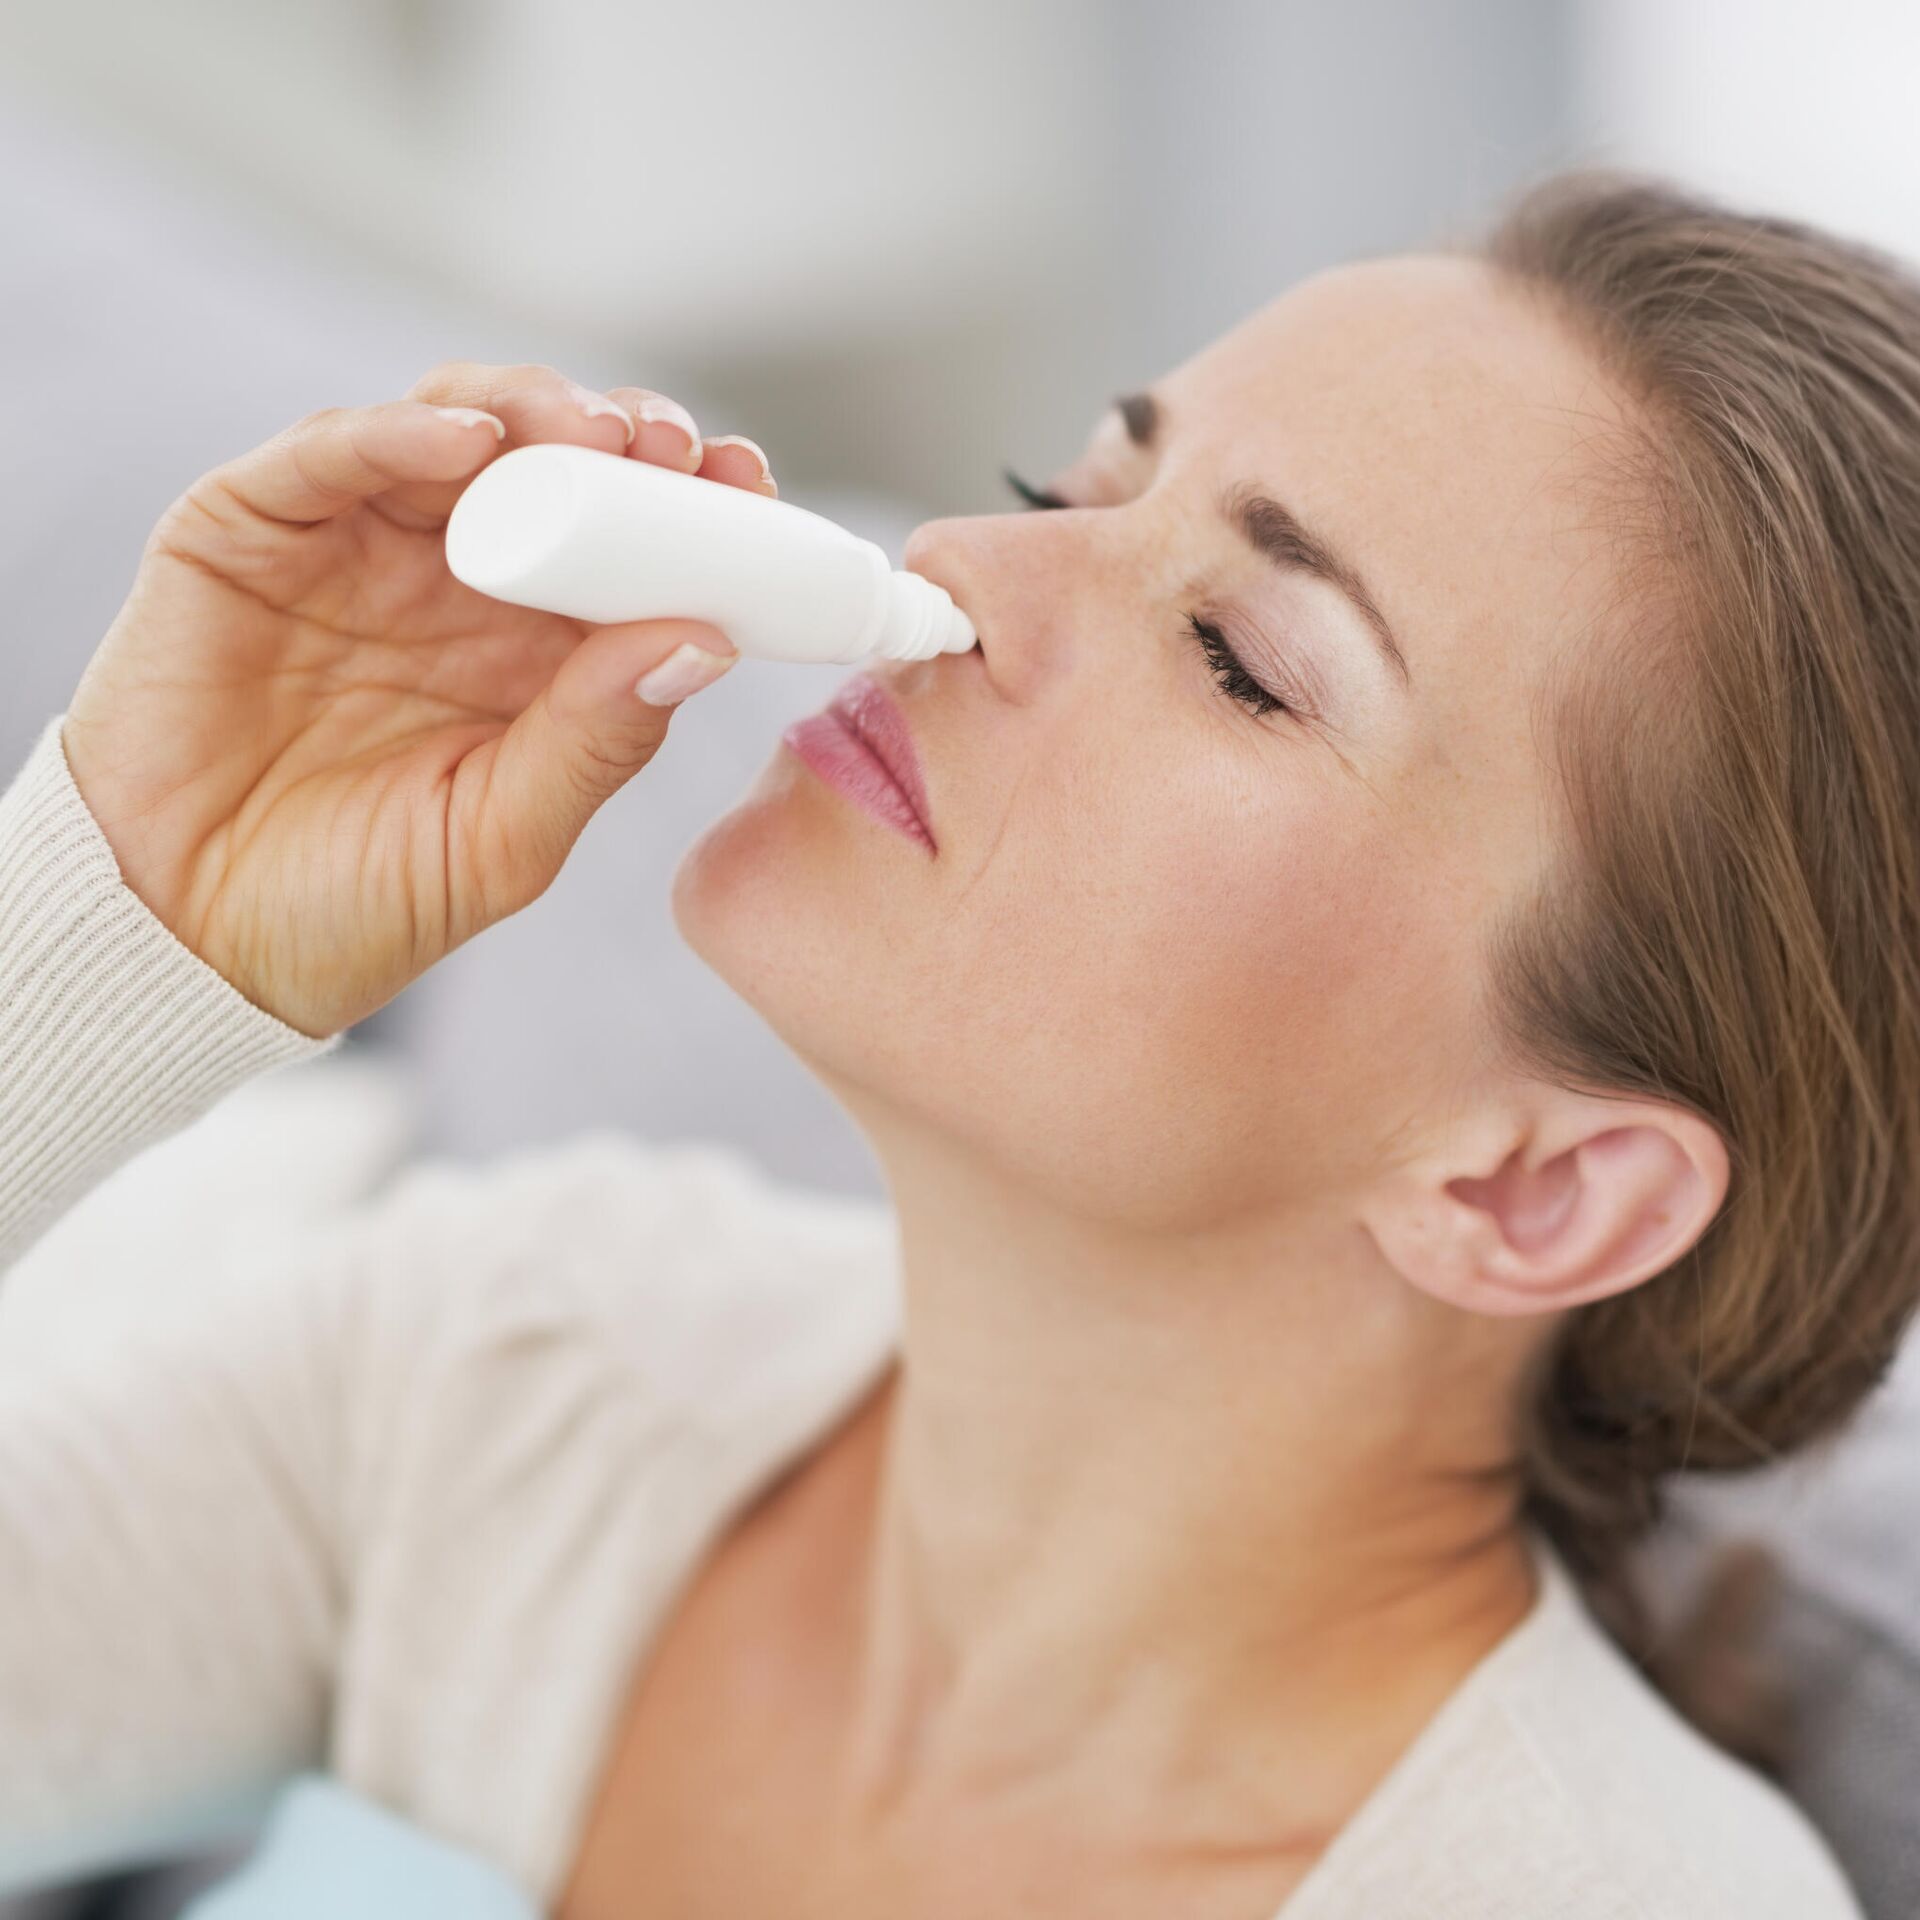 Чем опасны сосудосуживающие капли в нос? | Клиника «Консилиум» — Астрахань